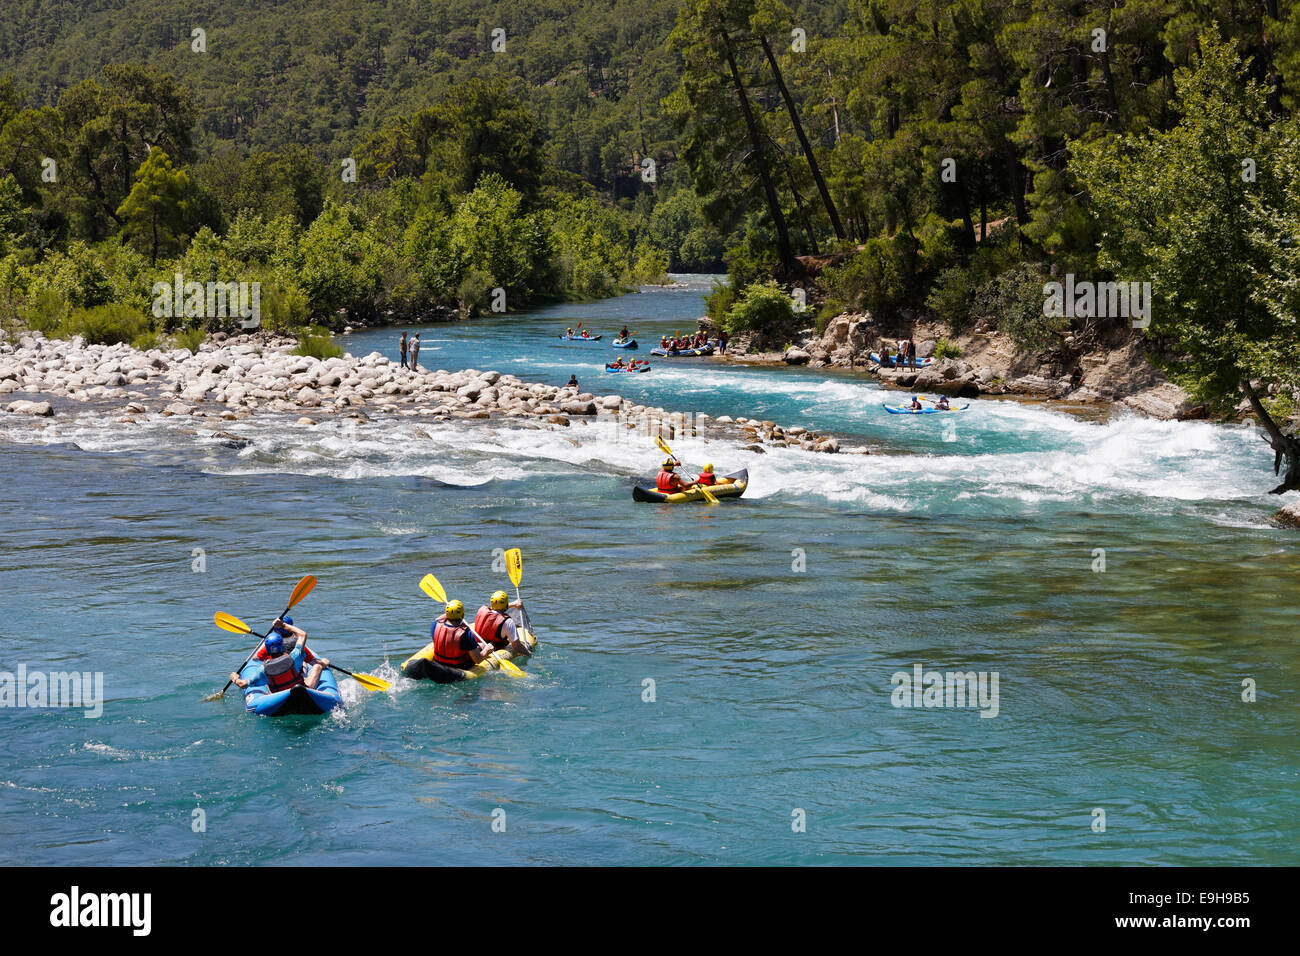 Remaban, rafting en el río, Köprülü Köprüçay Canyon National Park, de la provincia de Antalya, Turquía Foto de stock